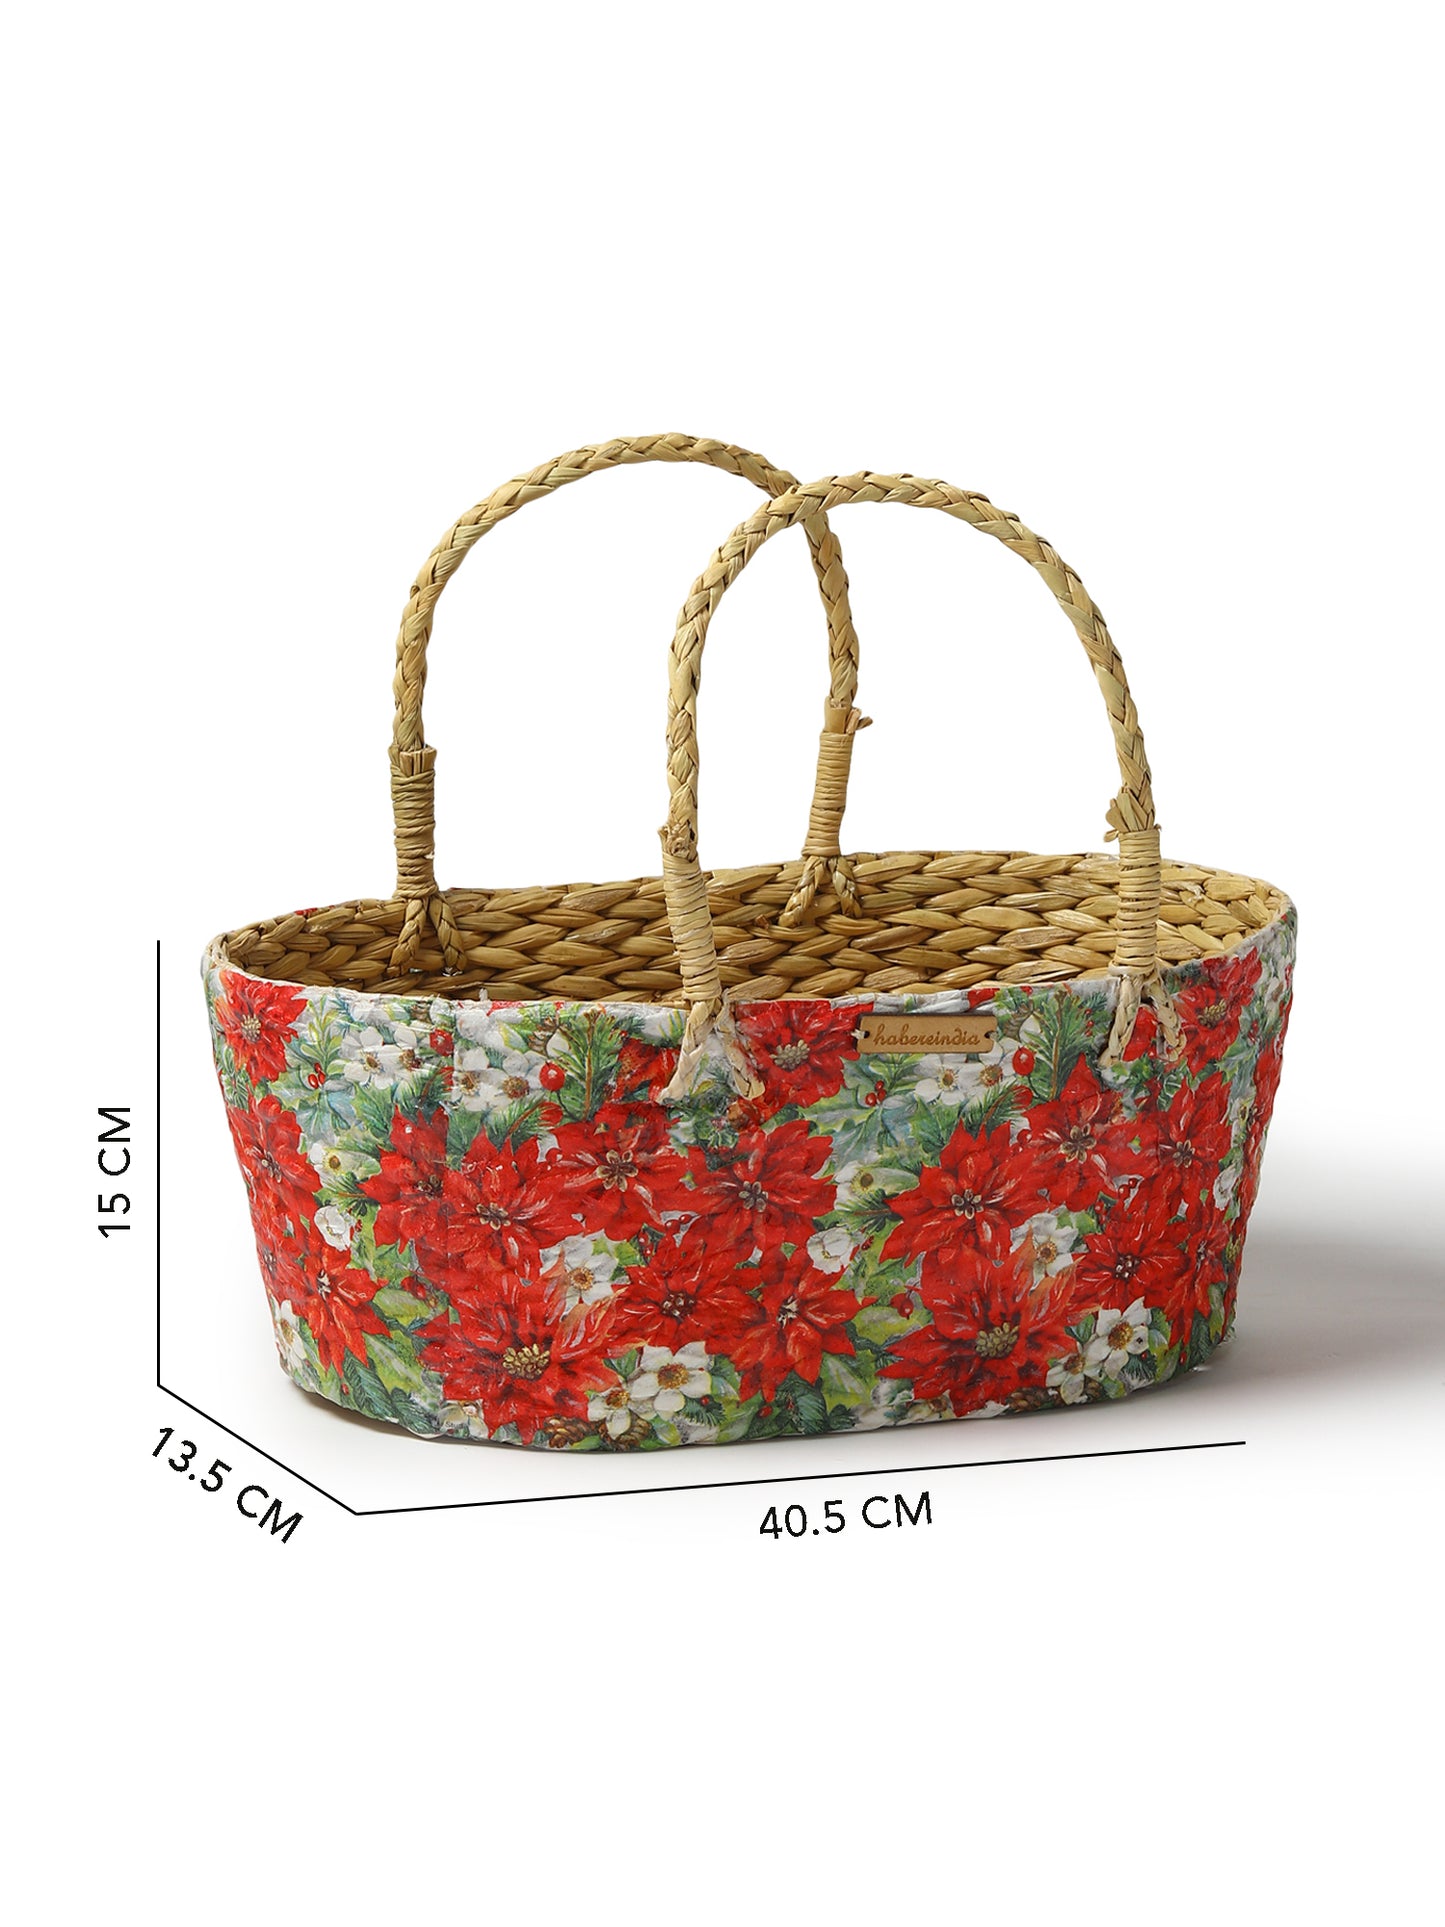 Seagrass Gift Hamper Basket